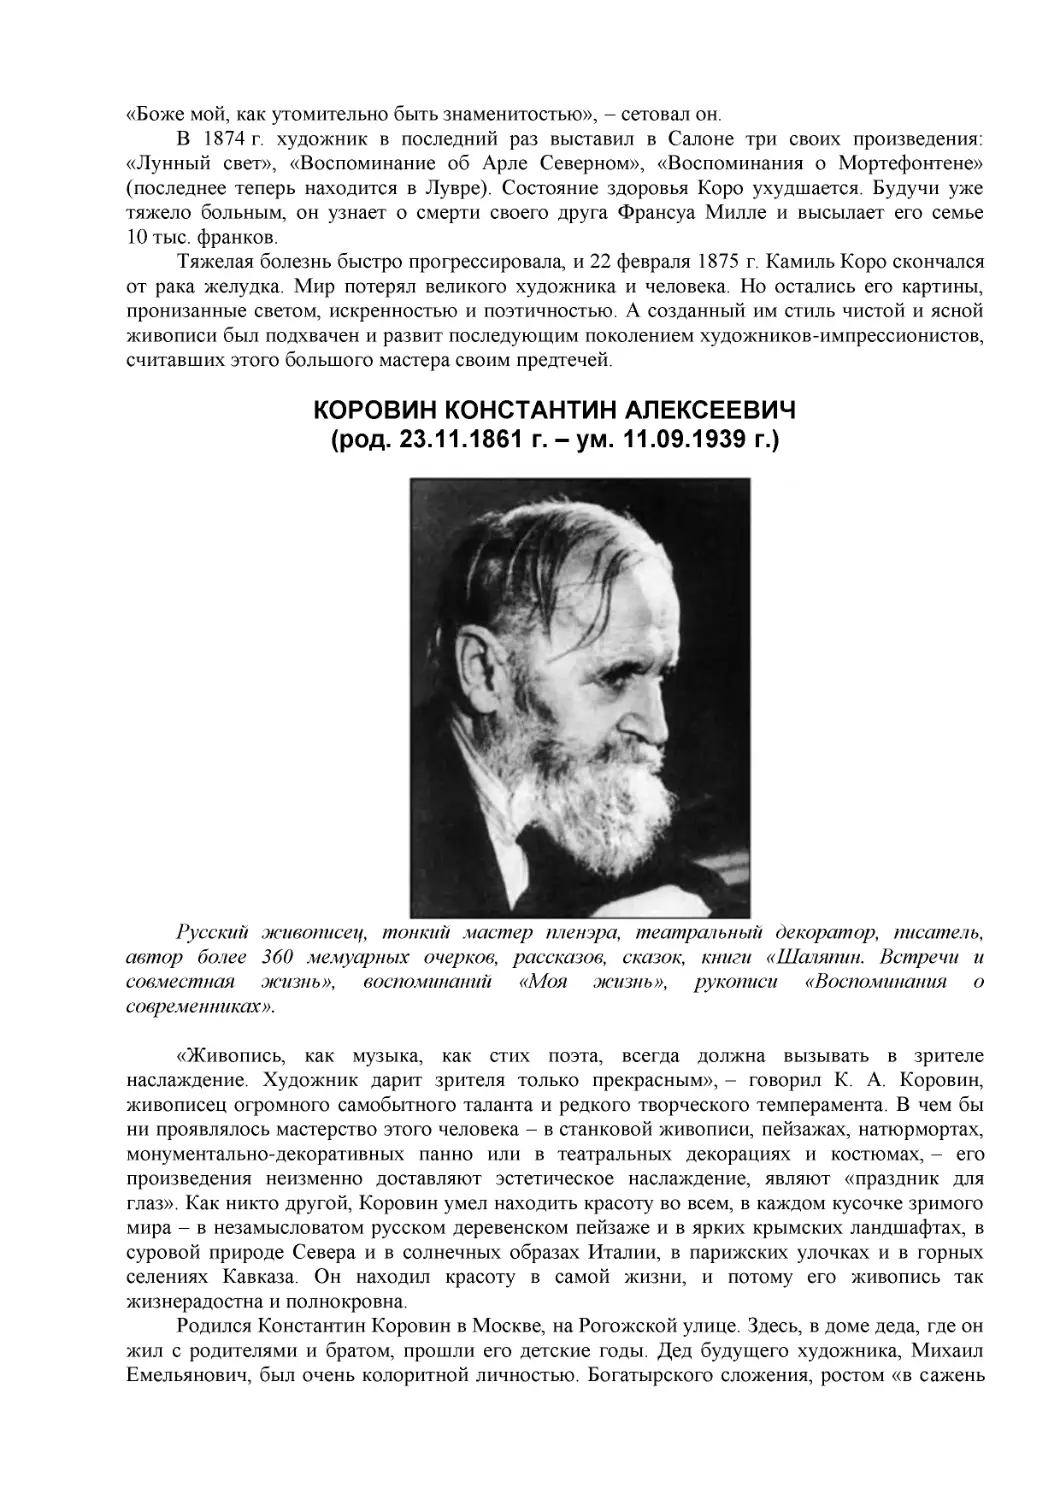 КОРОВИН КОНСТАНТИН АЛЕКСЕЕВИЧ
(род. 23.11.1861 г. – ум. 11.09.1939 г.)